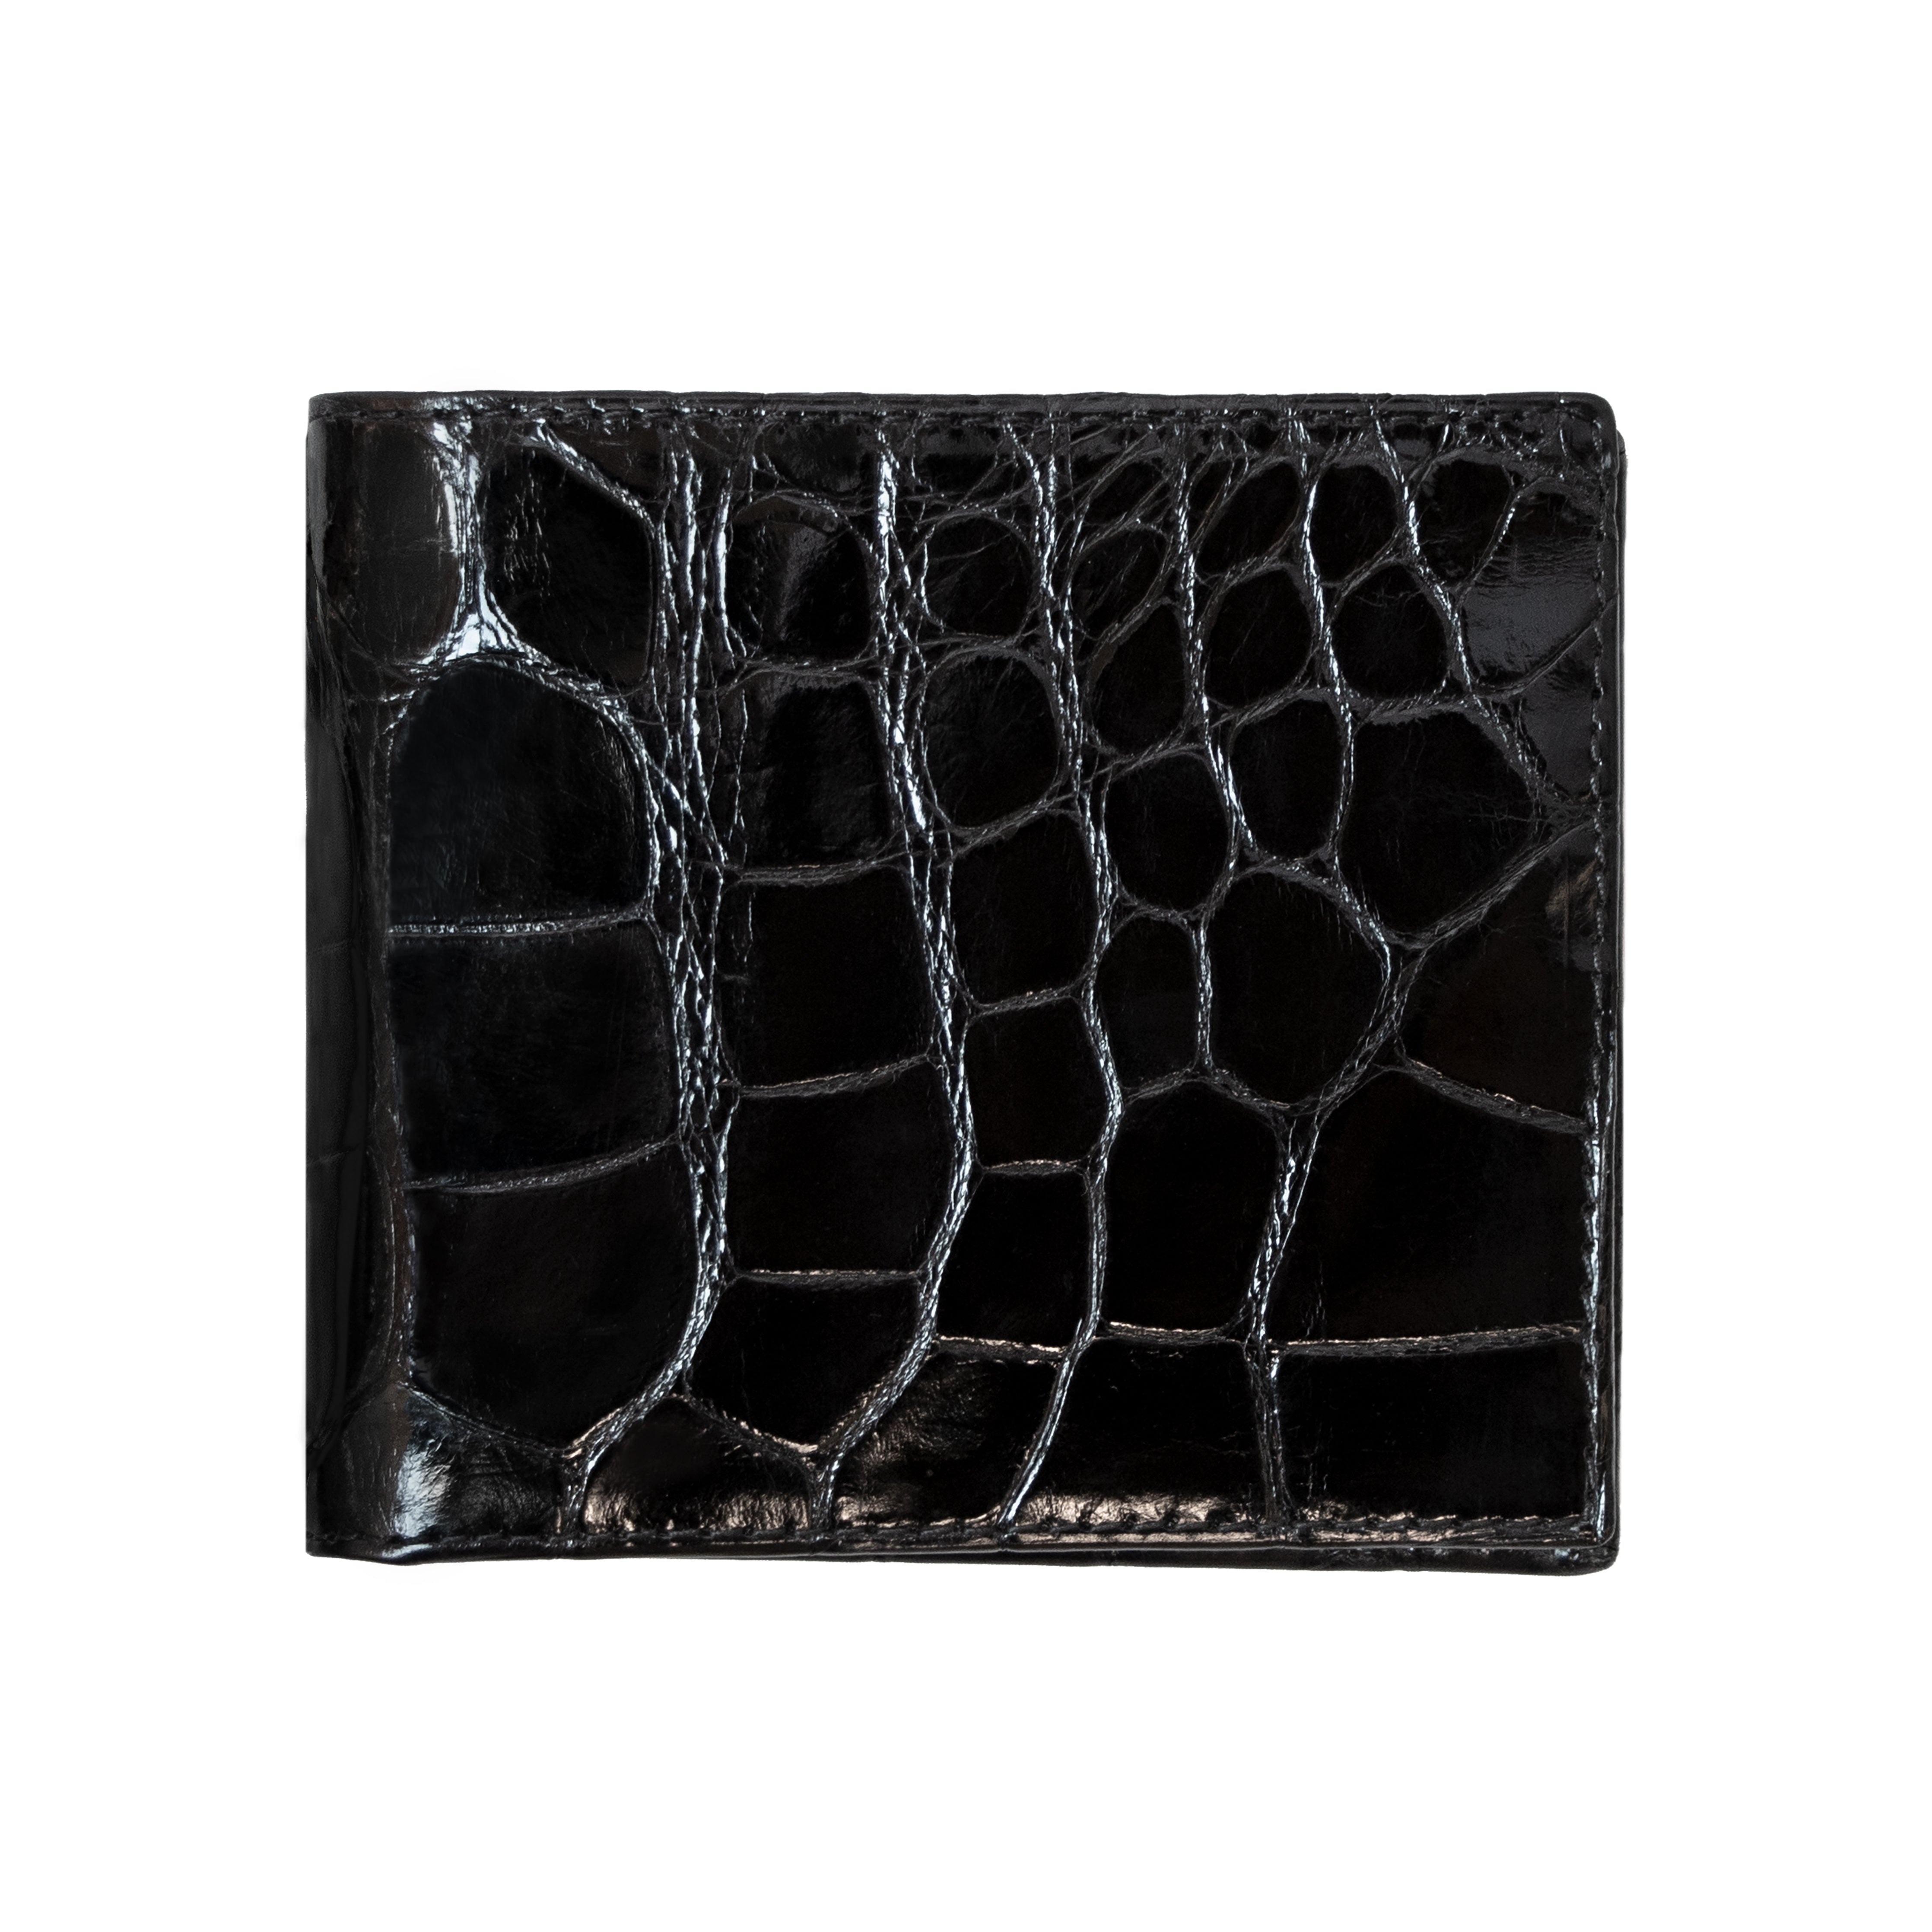 BLACK DOUBLE SIDE Alligator Crocodile Leather Credit Card Holder